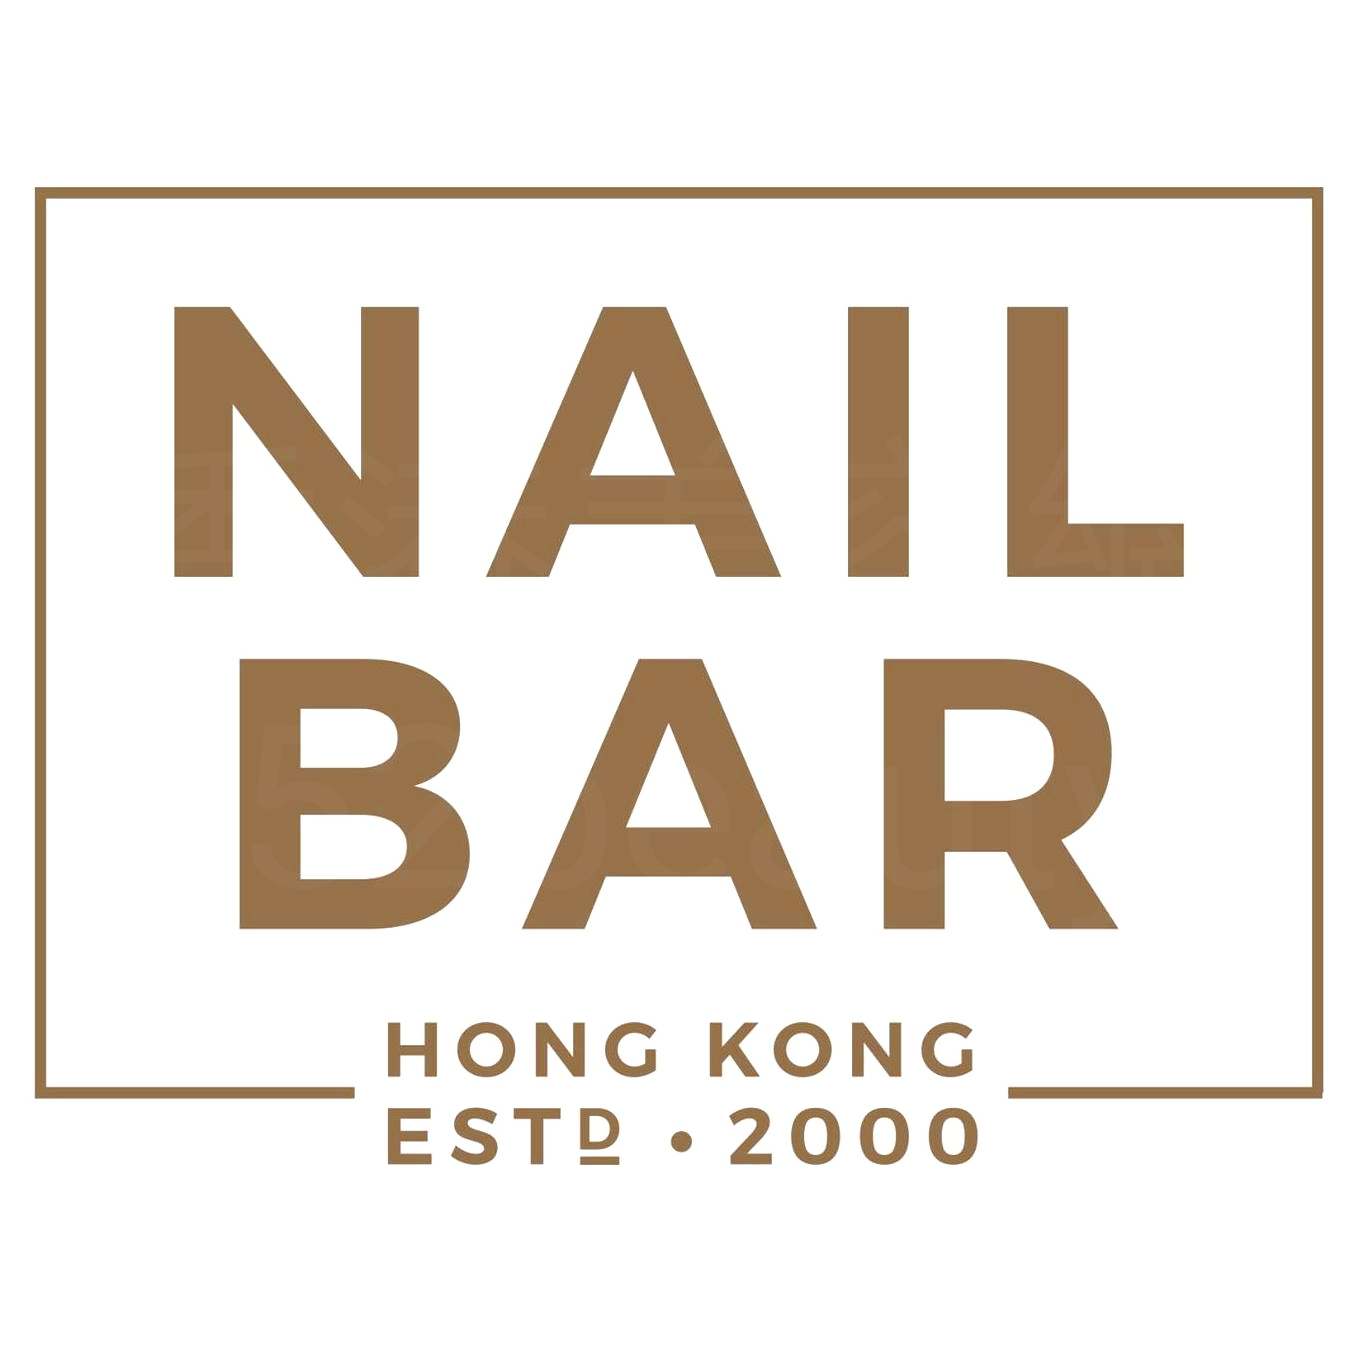 香港美容網 Hong Kong Beauty Salon 美容院 / 美容師: NAIL BAR (青衣店) (光榮結業)